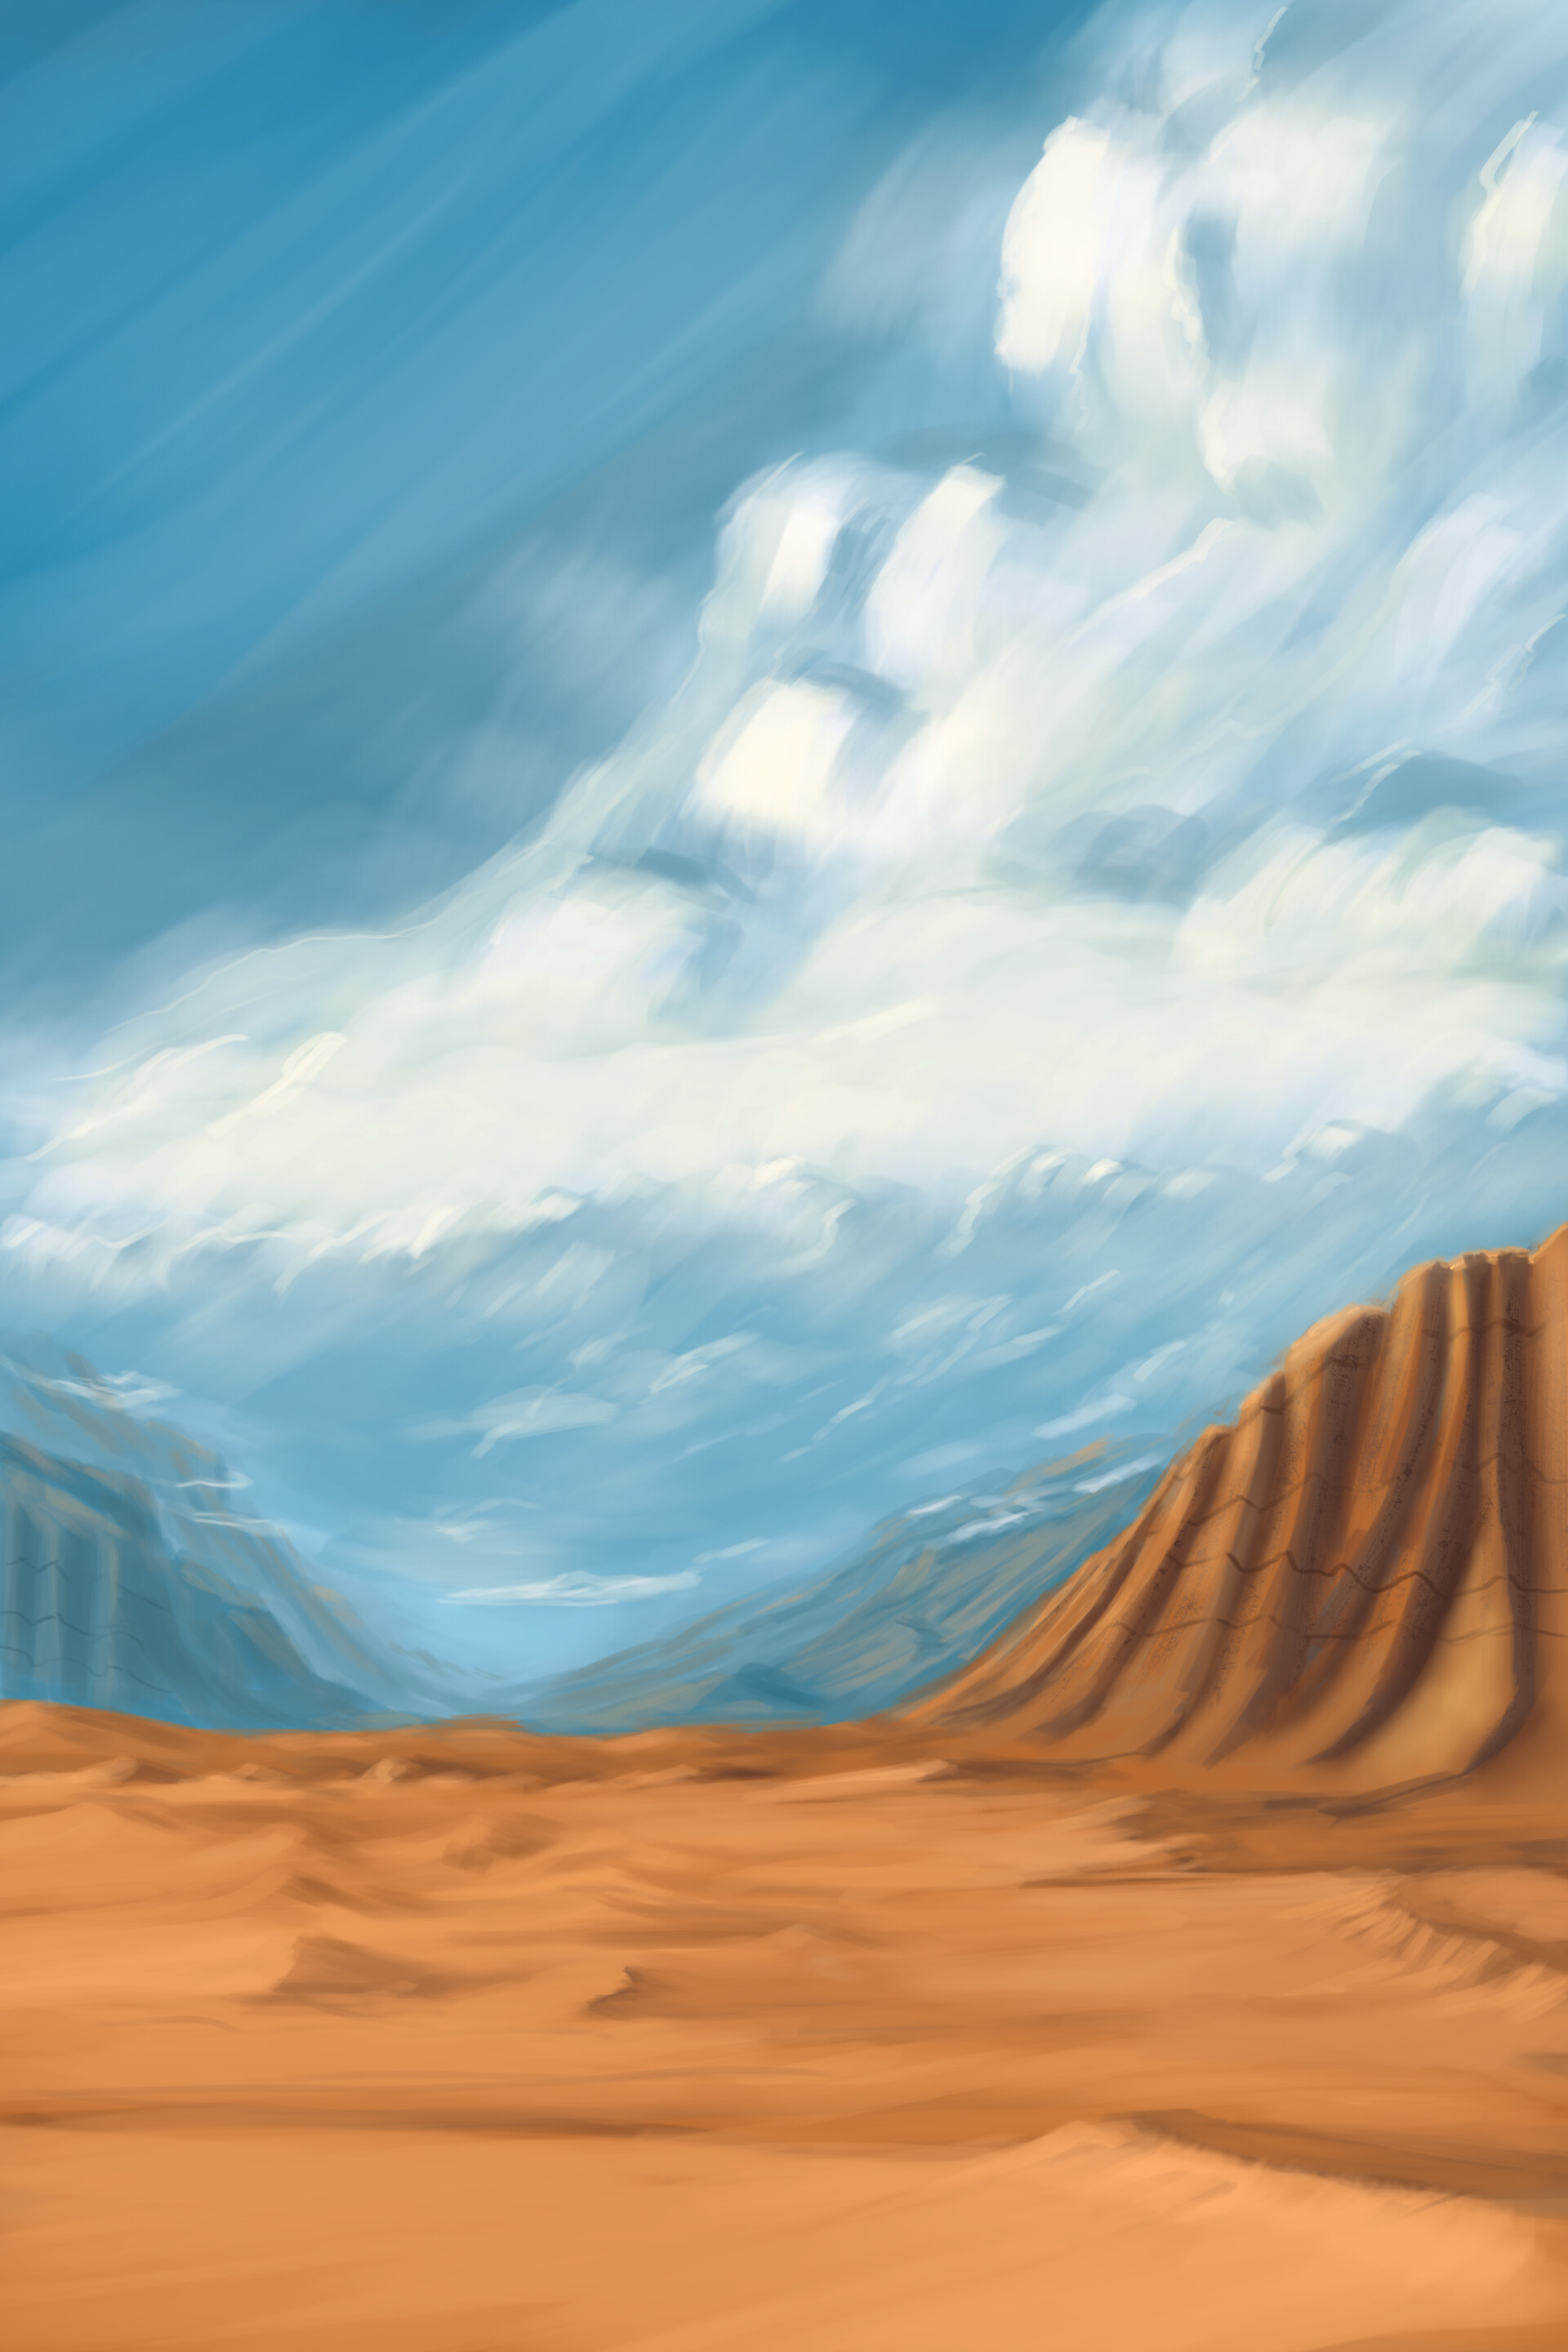 Thung lũng sa mạc (Desert valley): \